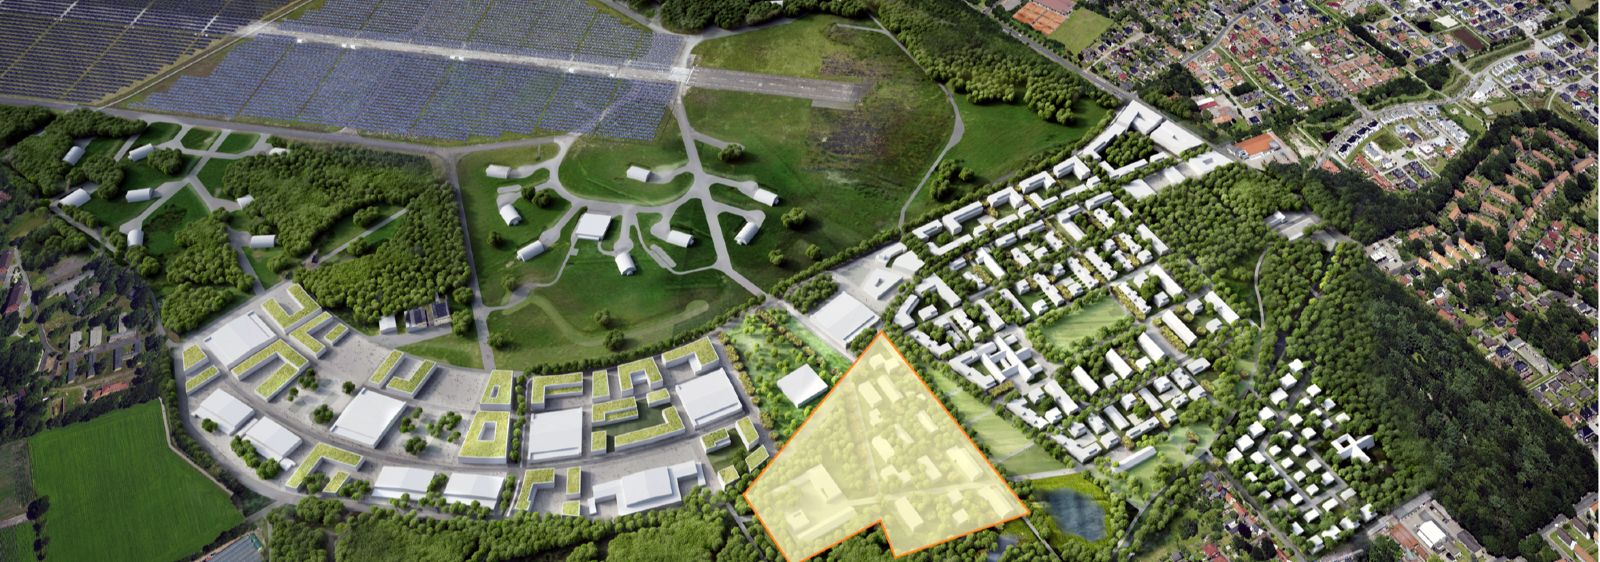 Auf einer Teilfläche des ehemaligen Fliegerhorsts in Oldenburg entsteht ein neues Wohnquartier. Es soll ein sogenanntes Reallabor für Smart-City-Technologien sein.